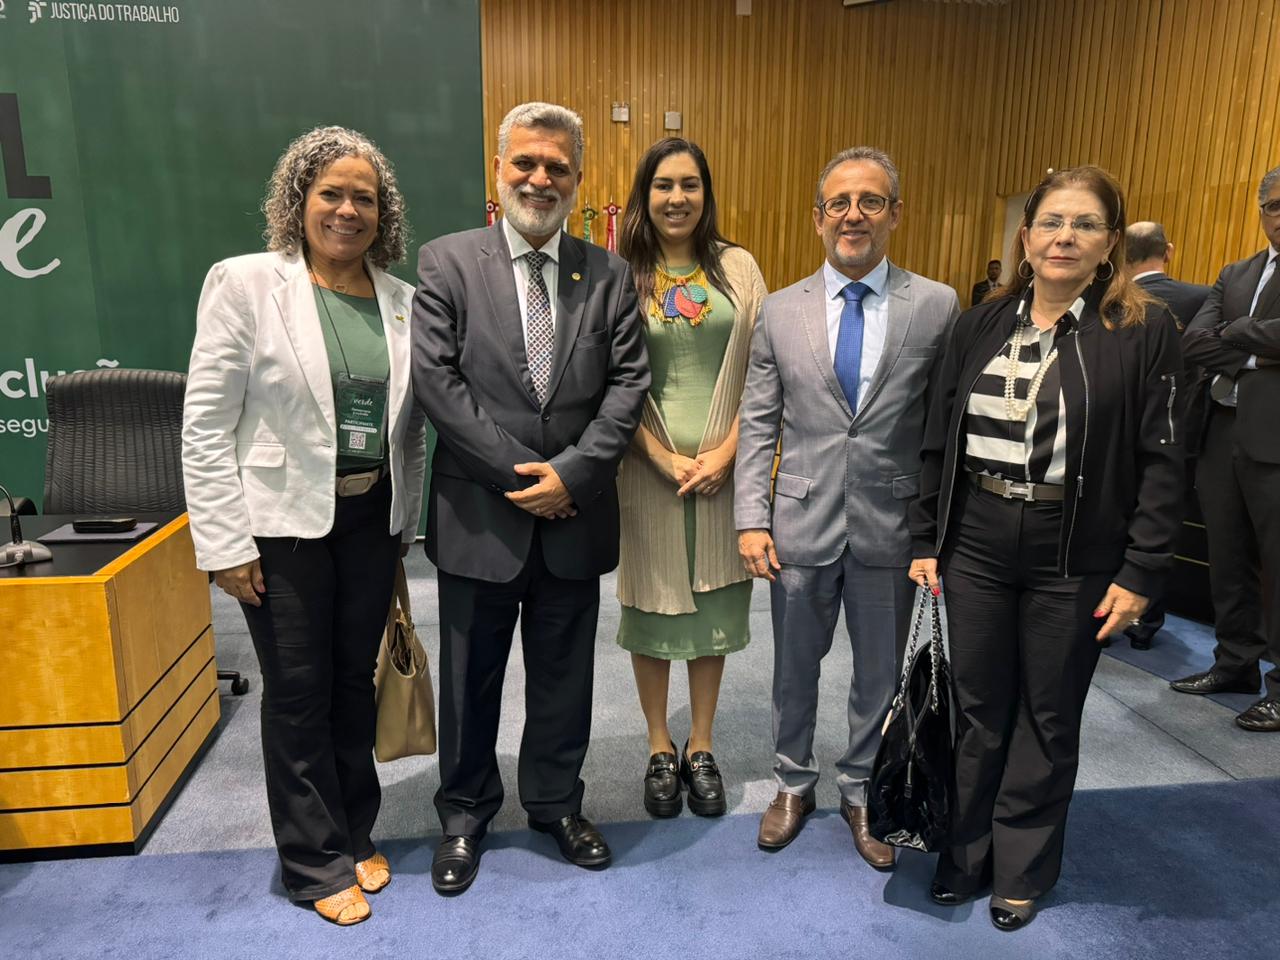 O ministro Lelio Bentes Corrêa, presidente do TST e do CSJT, com os magistrados representantes do TRT-5 